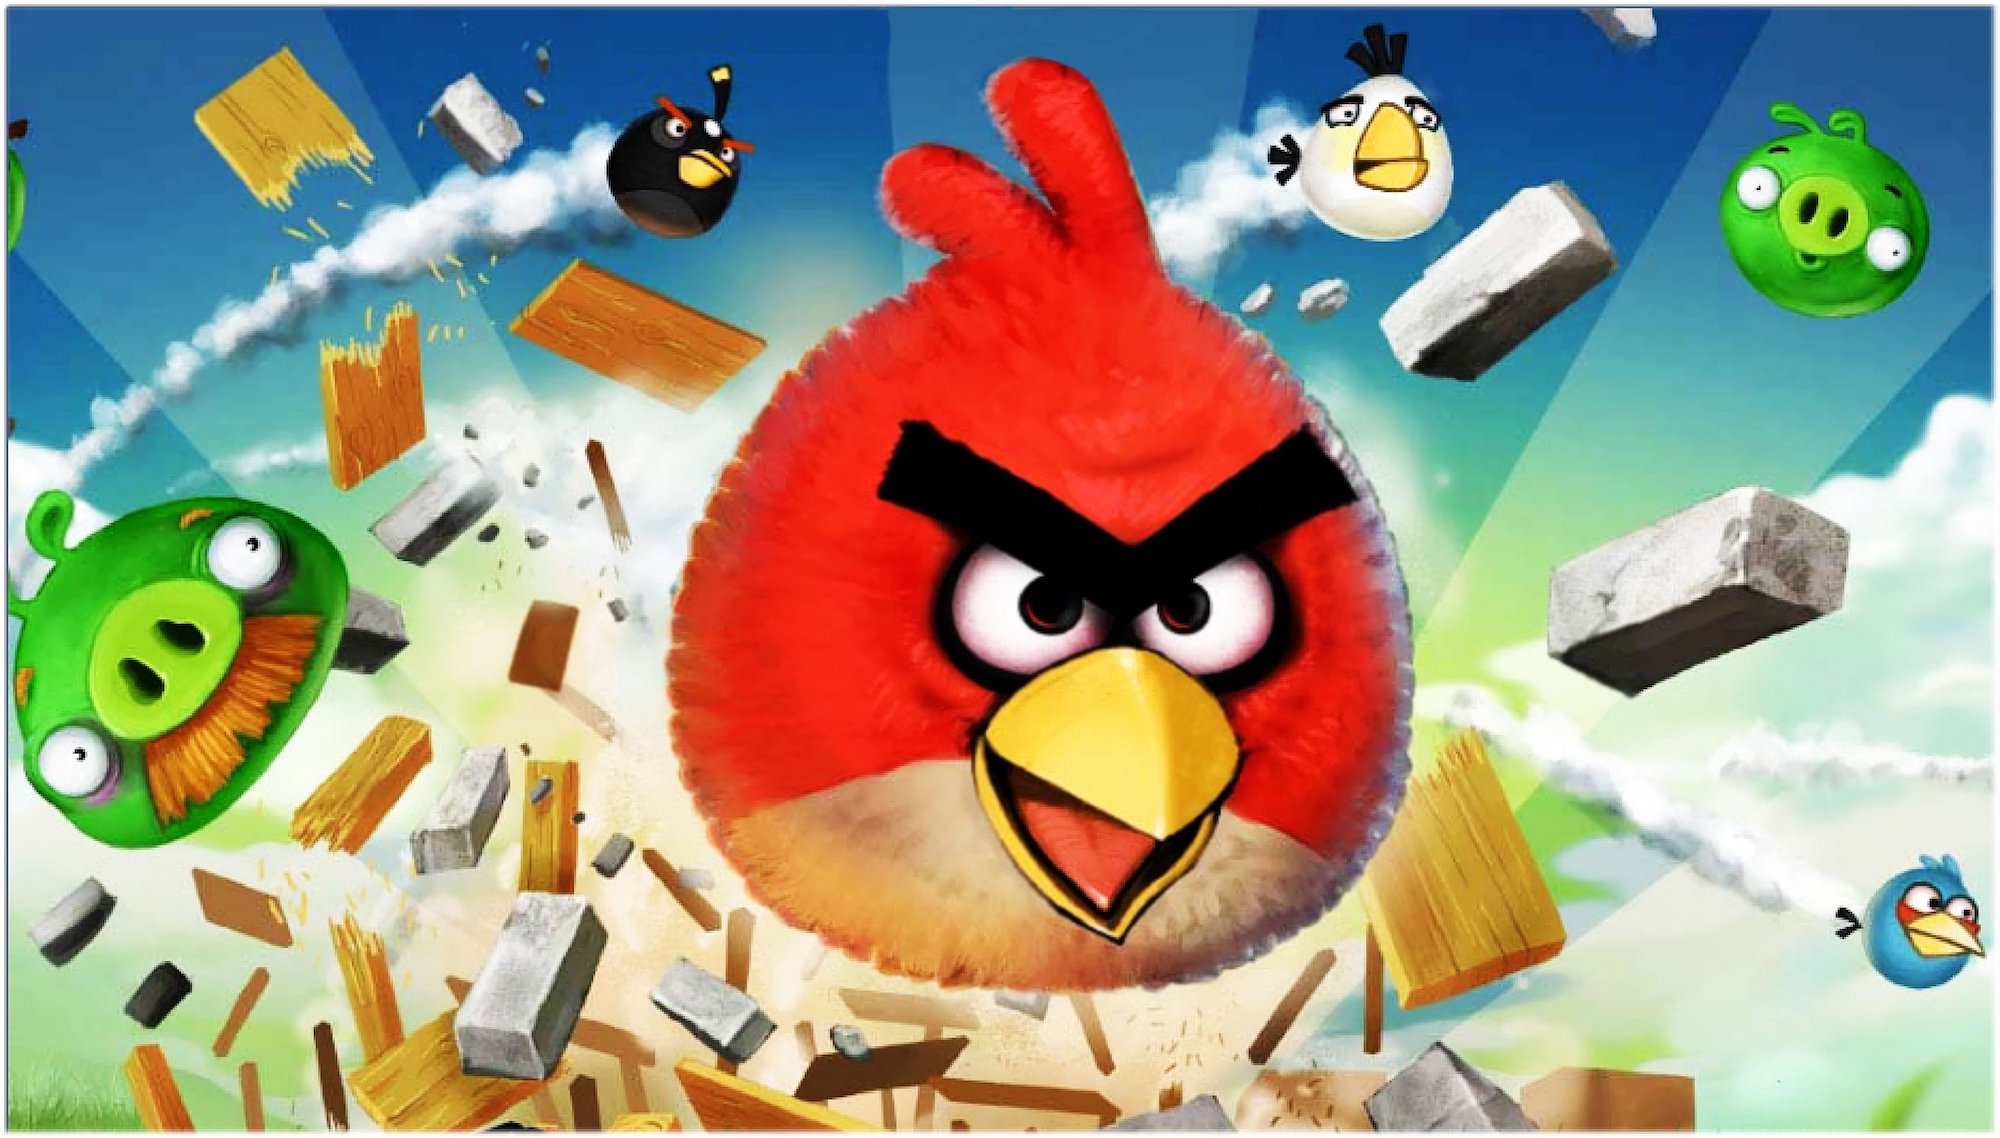 Angry Birds системные требования. Обновление Angry Birds башни Близнецы. Изумление в Angry Birds. Вышло обновление Angry Birds. Энгри бердз против